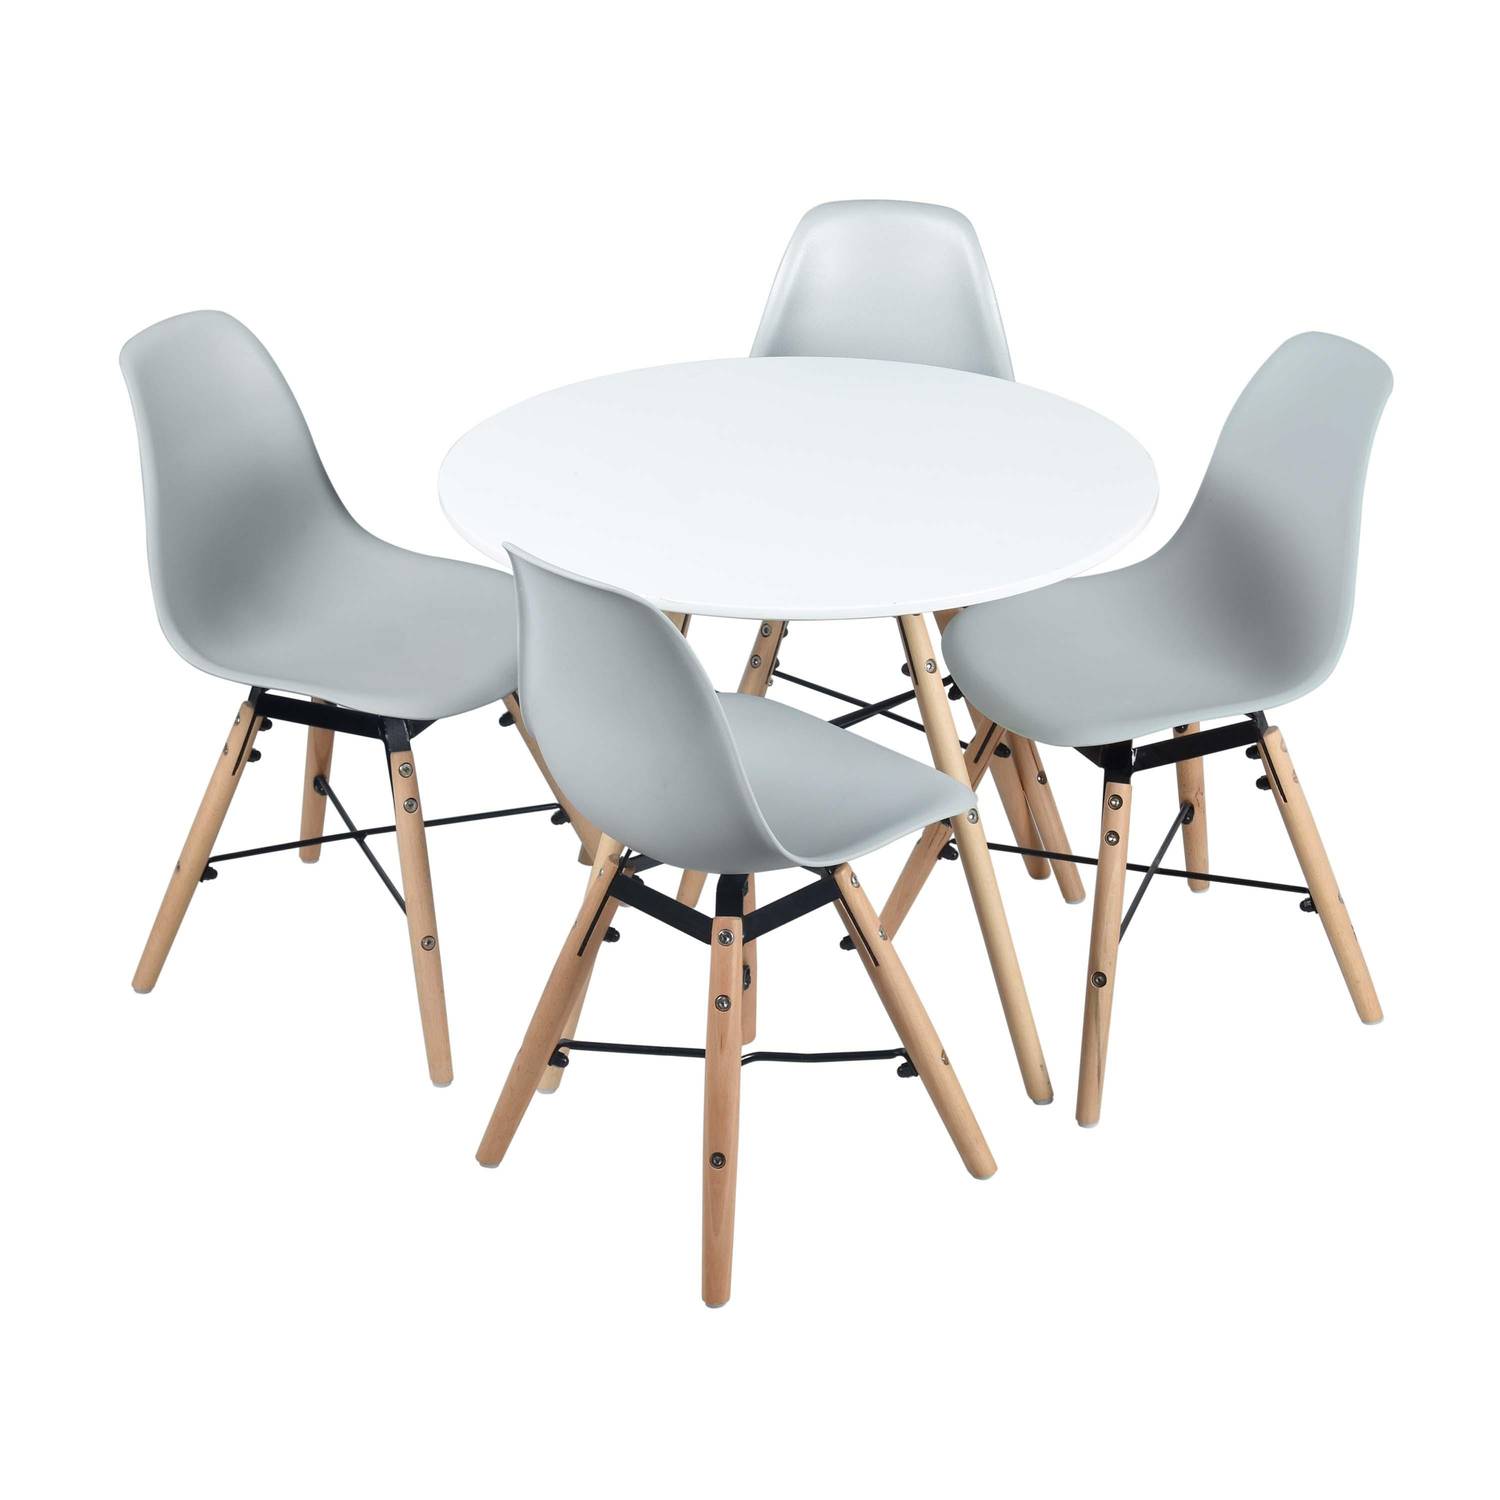 Runder Tisch und 4 graue Stühle im skandinavischen Stil für Kinder CHARLIE - Buche, grau und weiß, Ø 60 x H48 cm Photo1